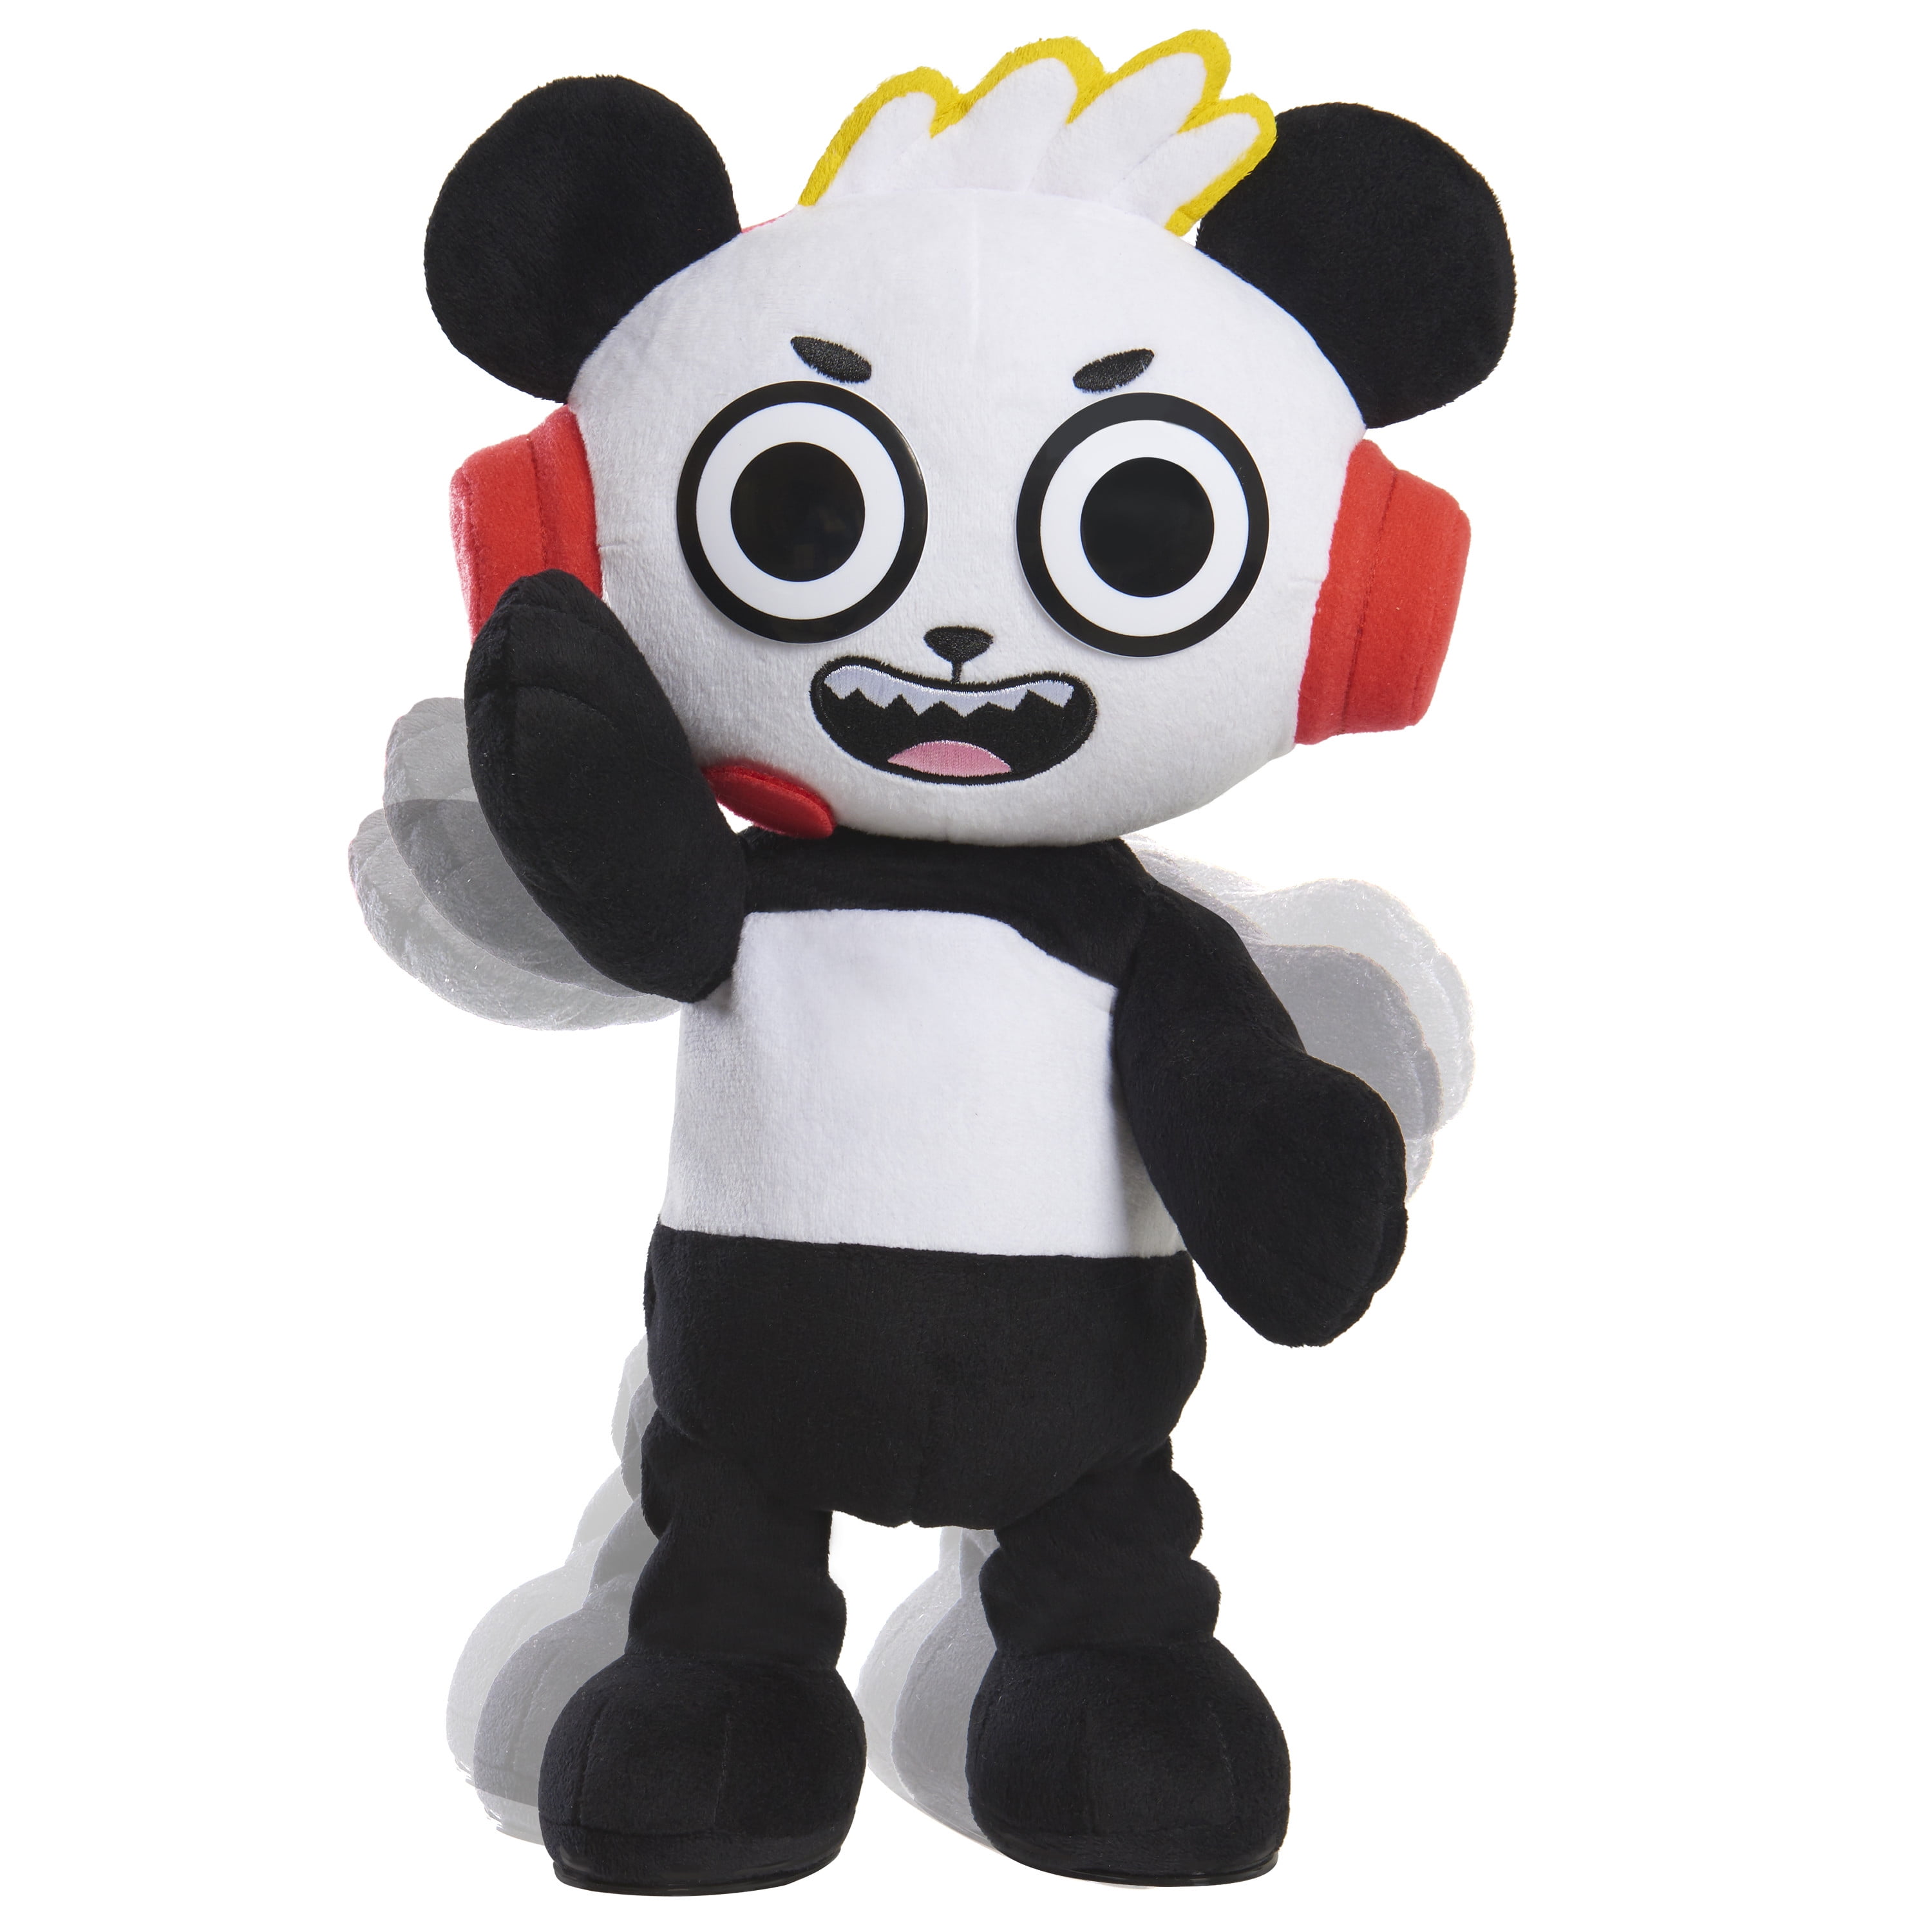 ryan toys panda